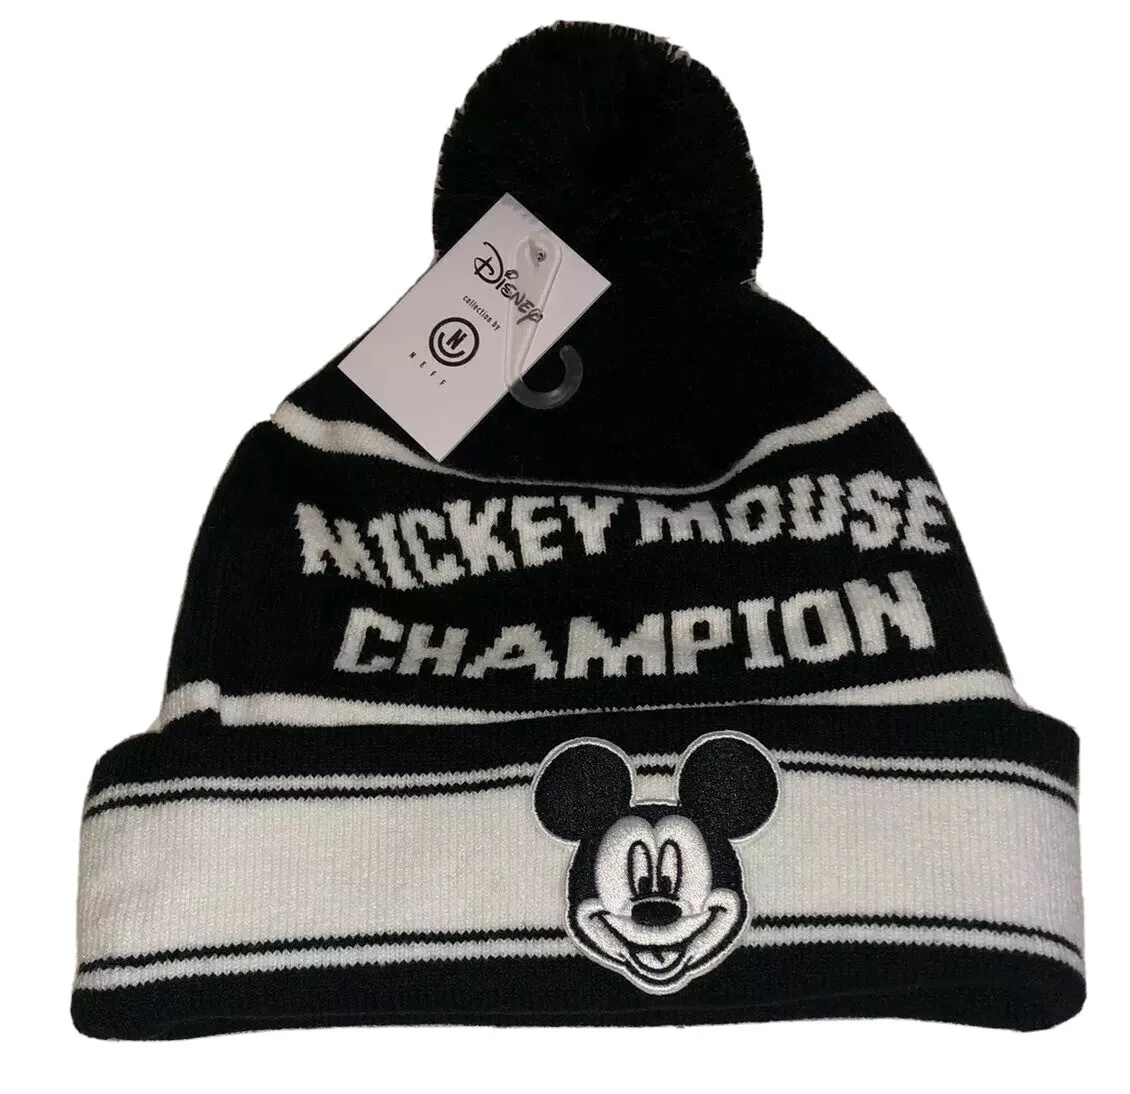 NEFF Mickey Mouse Champion Beanie | Disney Black OSFM Hat w Logo Skate eBay Men White